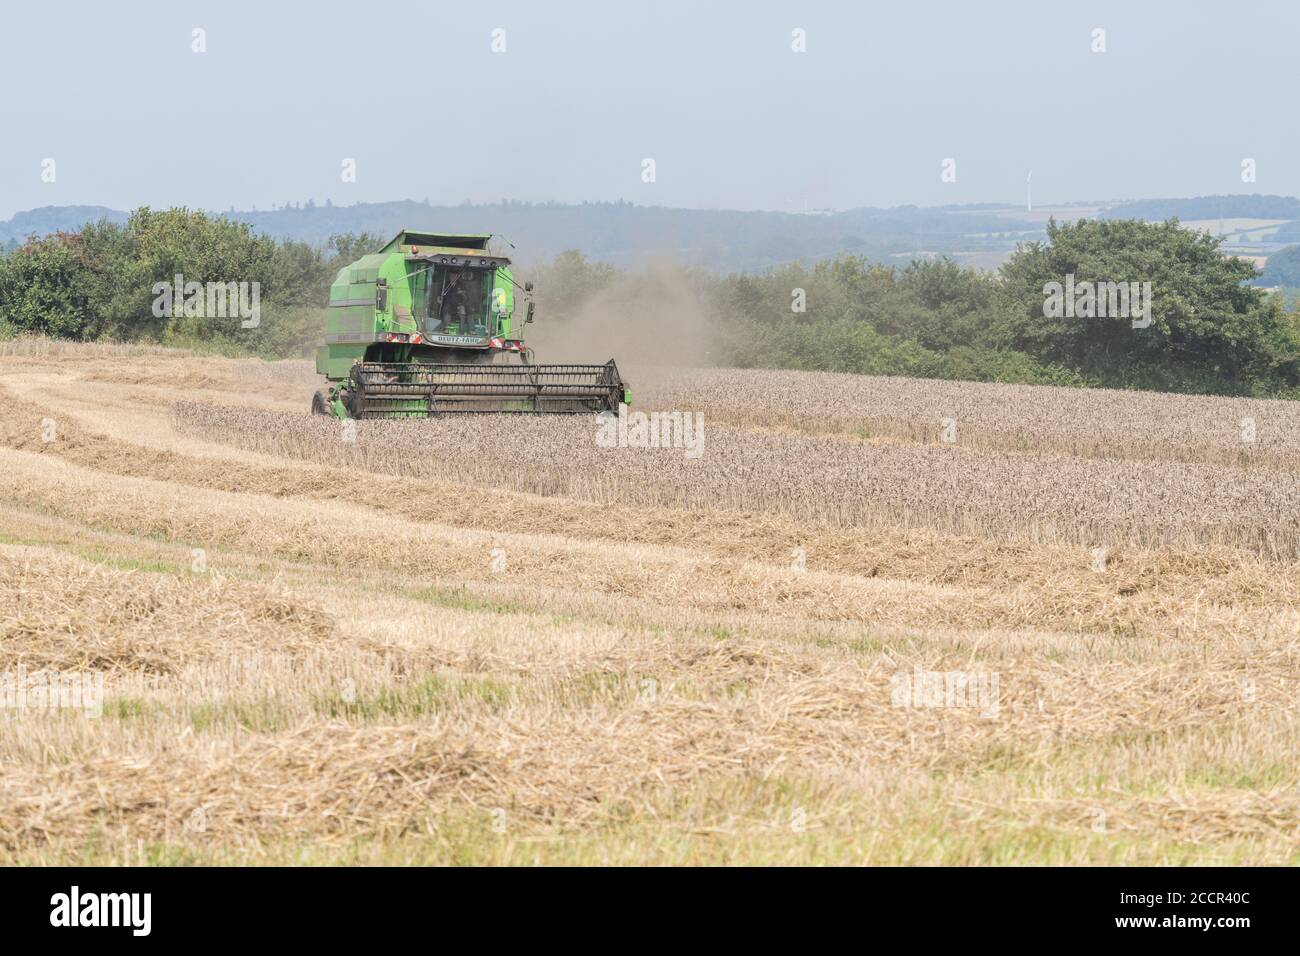 Moissonneuse-batteuse Deutz-Fahr 4065 coupe une récolte de blé 2020 au Royaume-Uni lors d'une journée chaude d'été et remplit d'air de poussière. Rabatteur à dents et cabine de l'opérateur visibles. Voir LES REMARQUES Banque D'Images